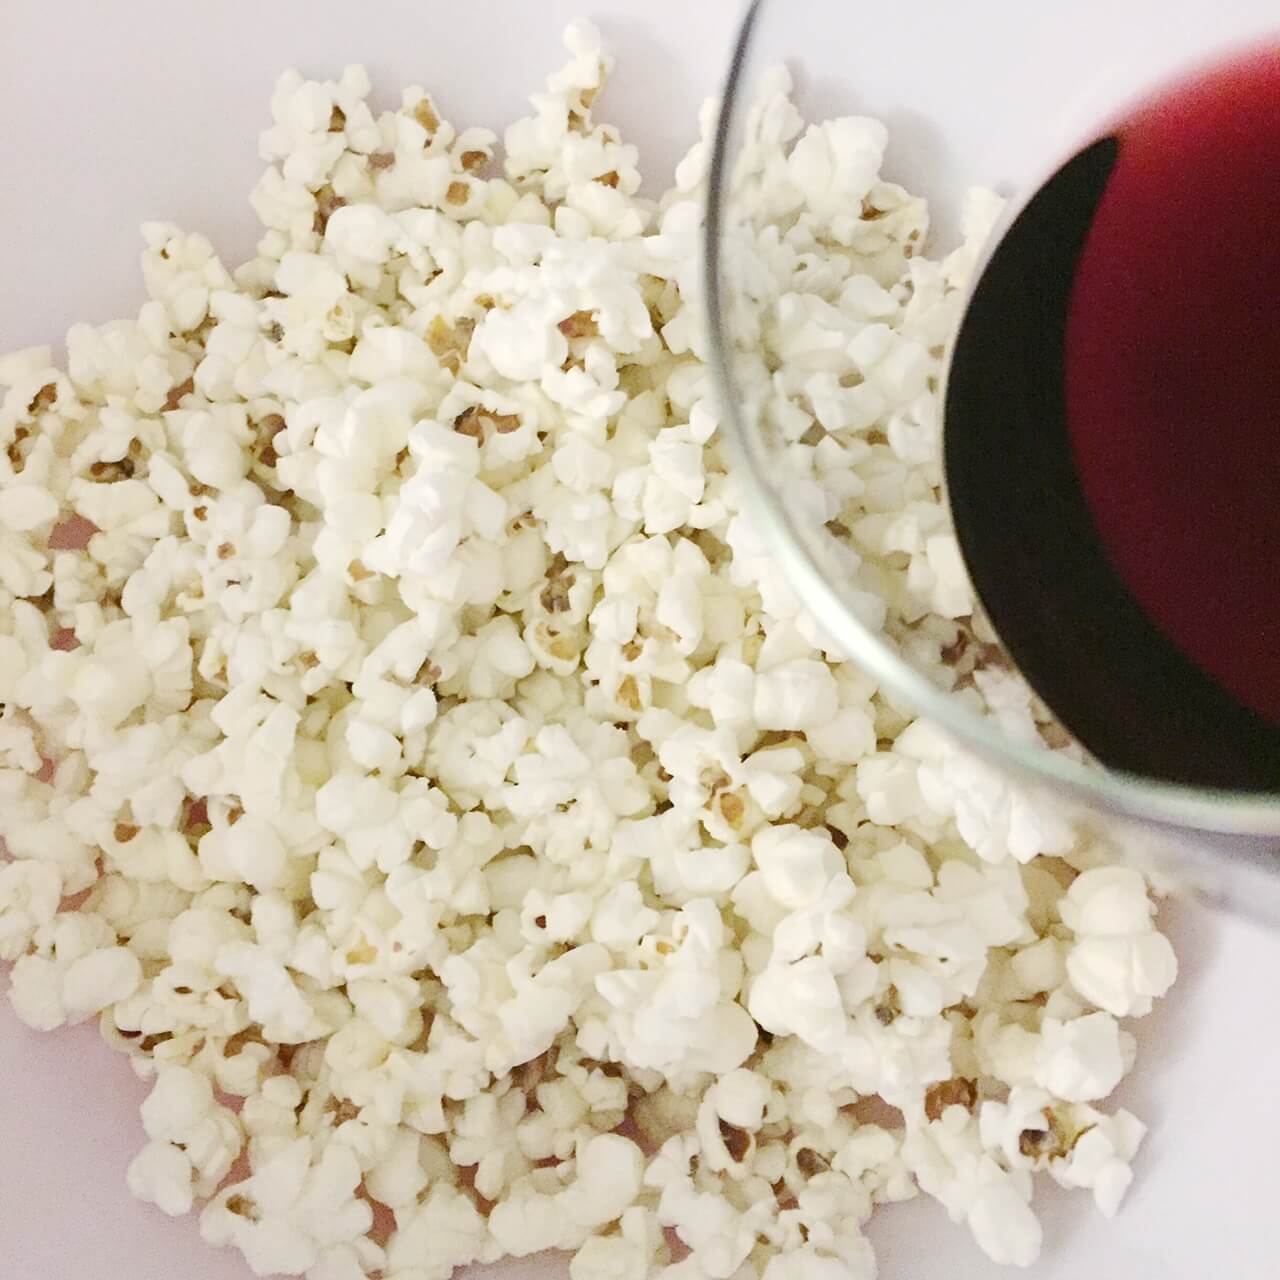 popcorn red wine movie scandal tv serie snack